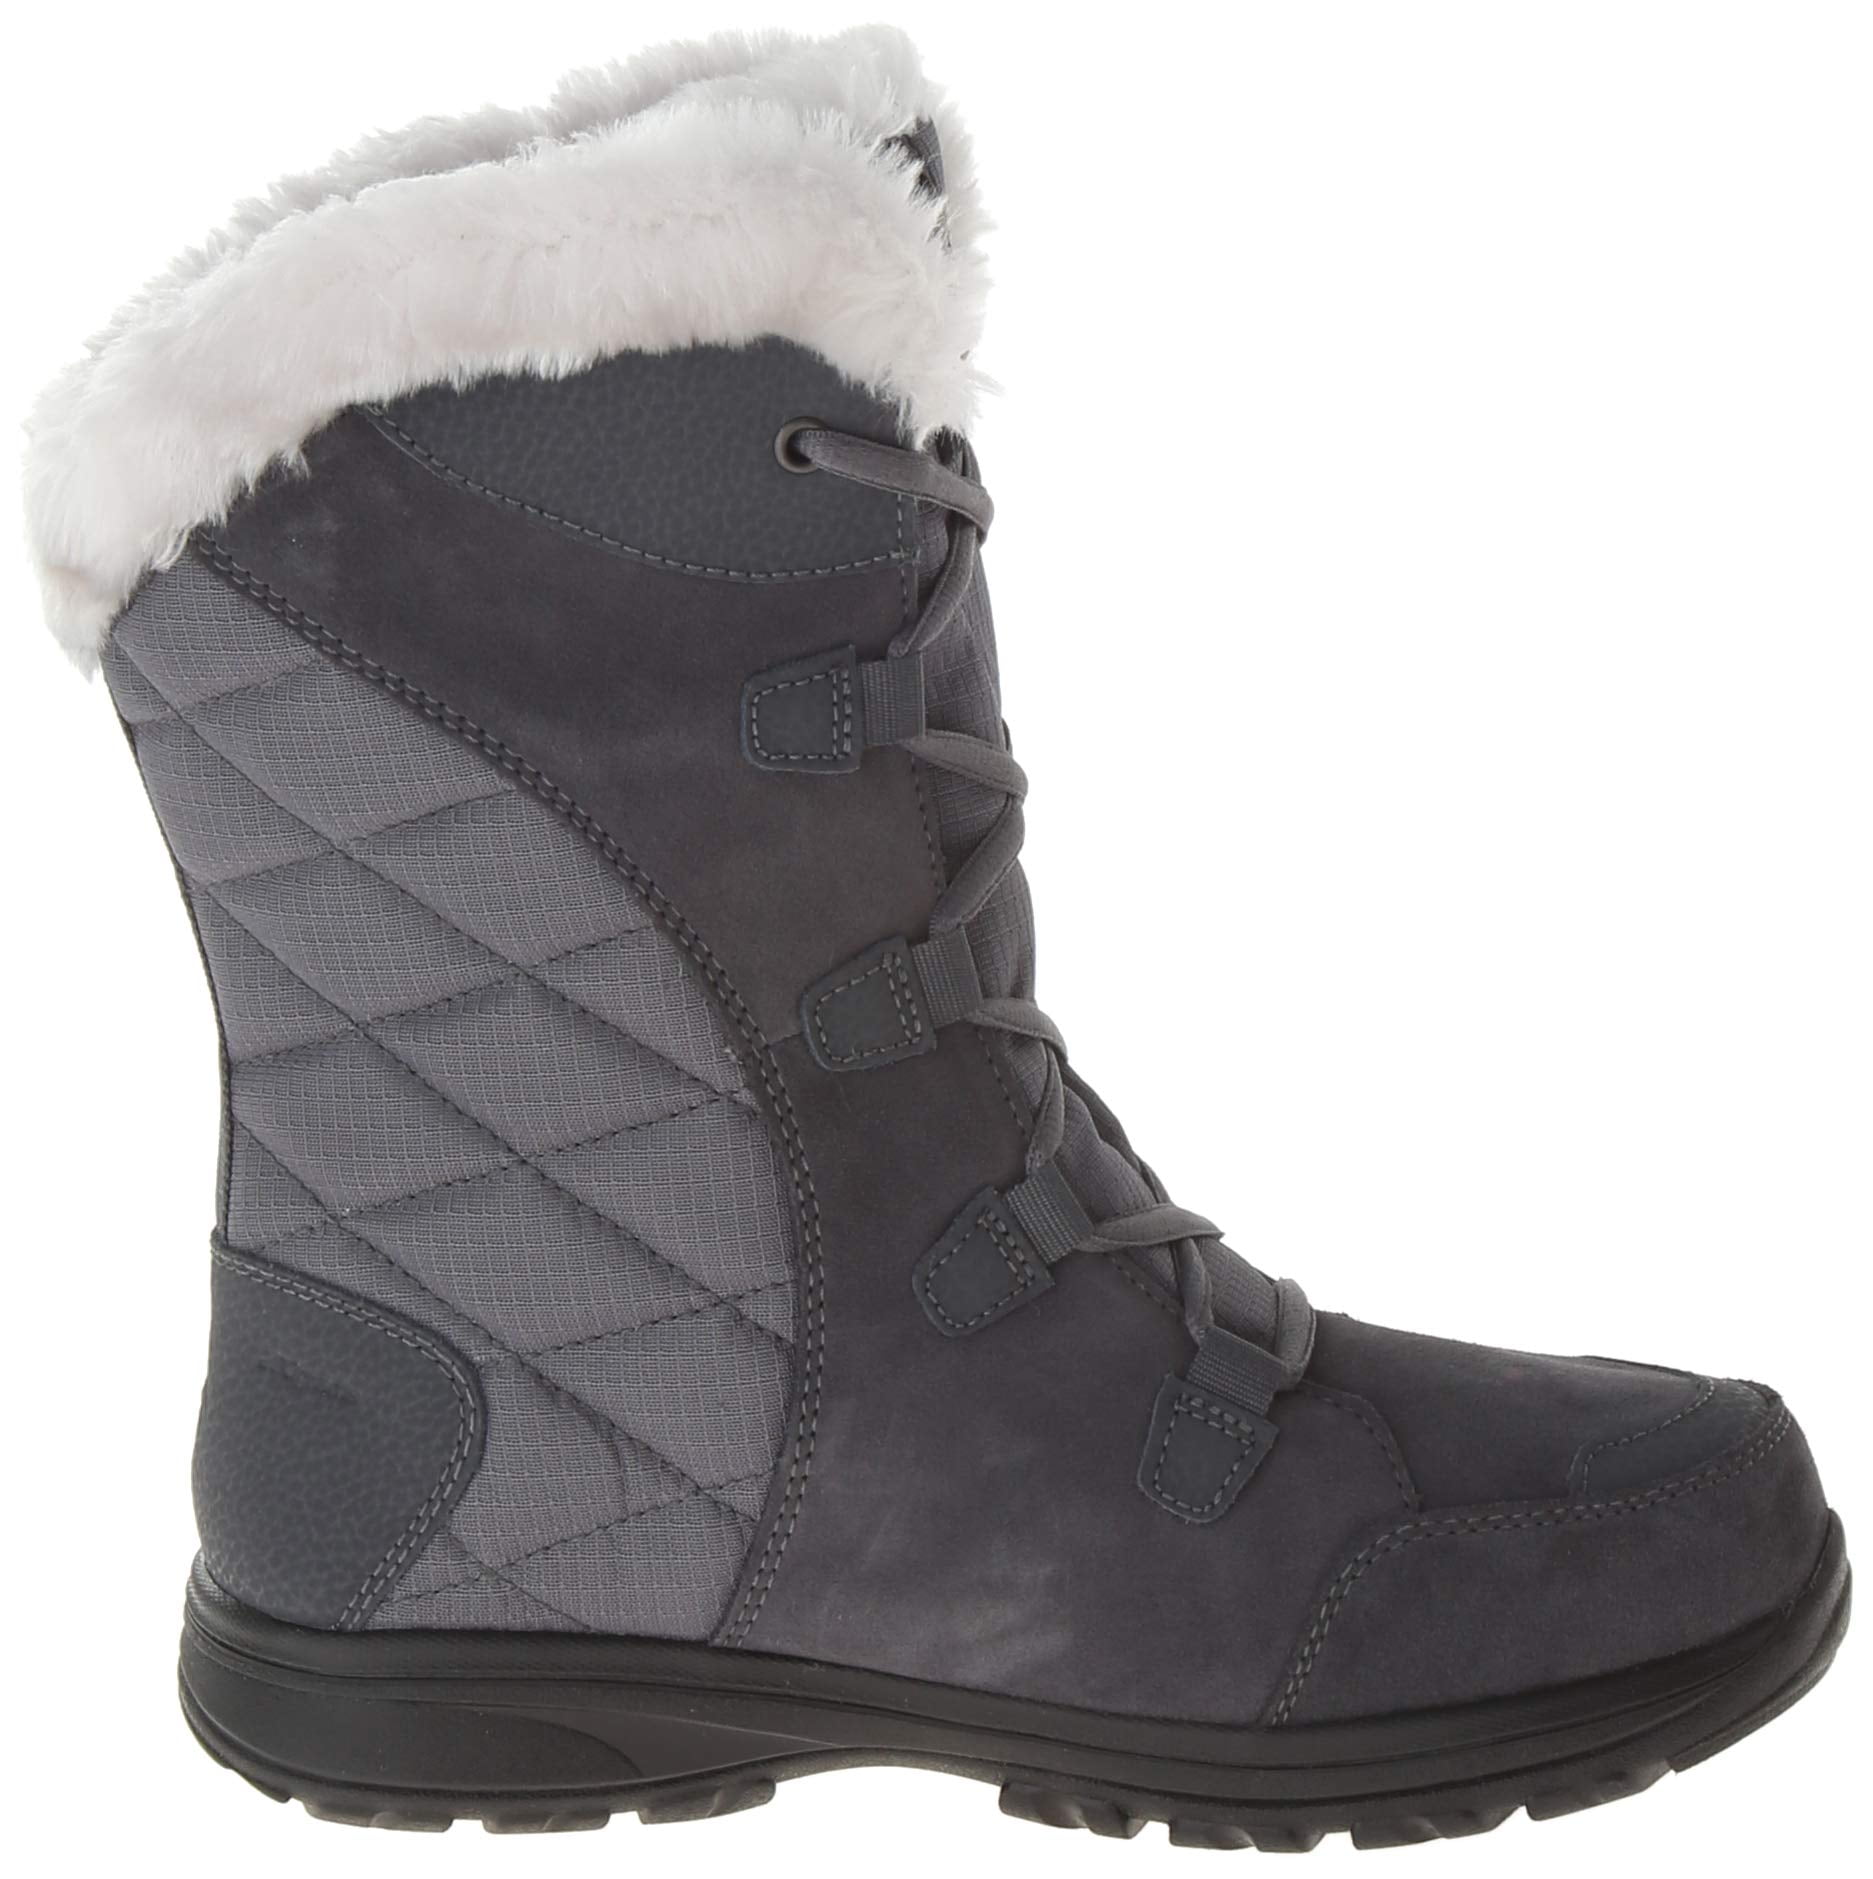 women's columbia ice maiden winter boots